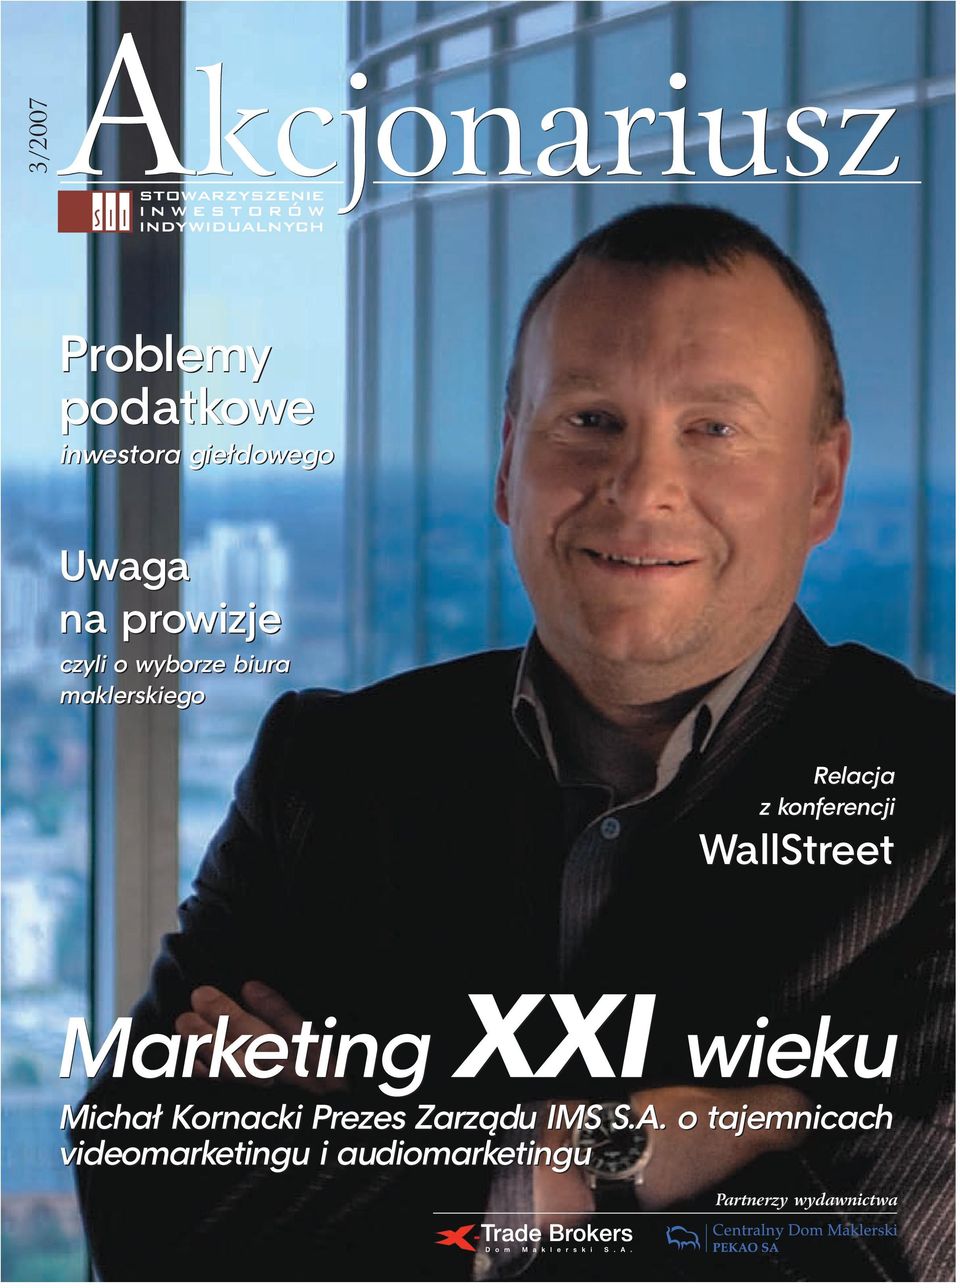 WallStreet Marketing XXI wieku Michał Kornacki Prezes Zarządu IMS S.